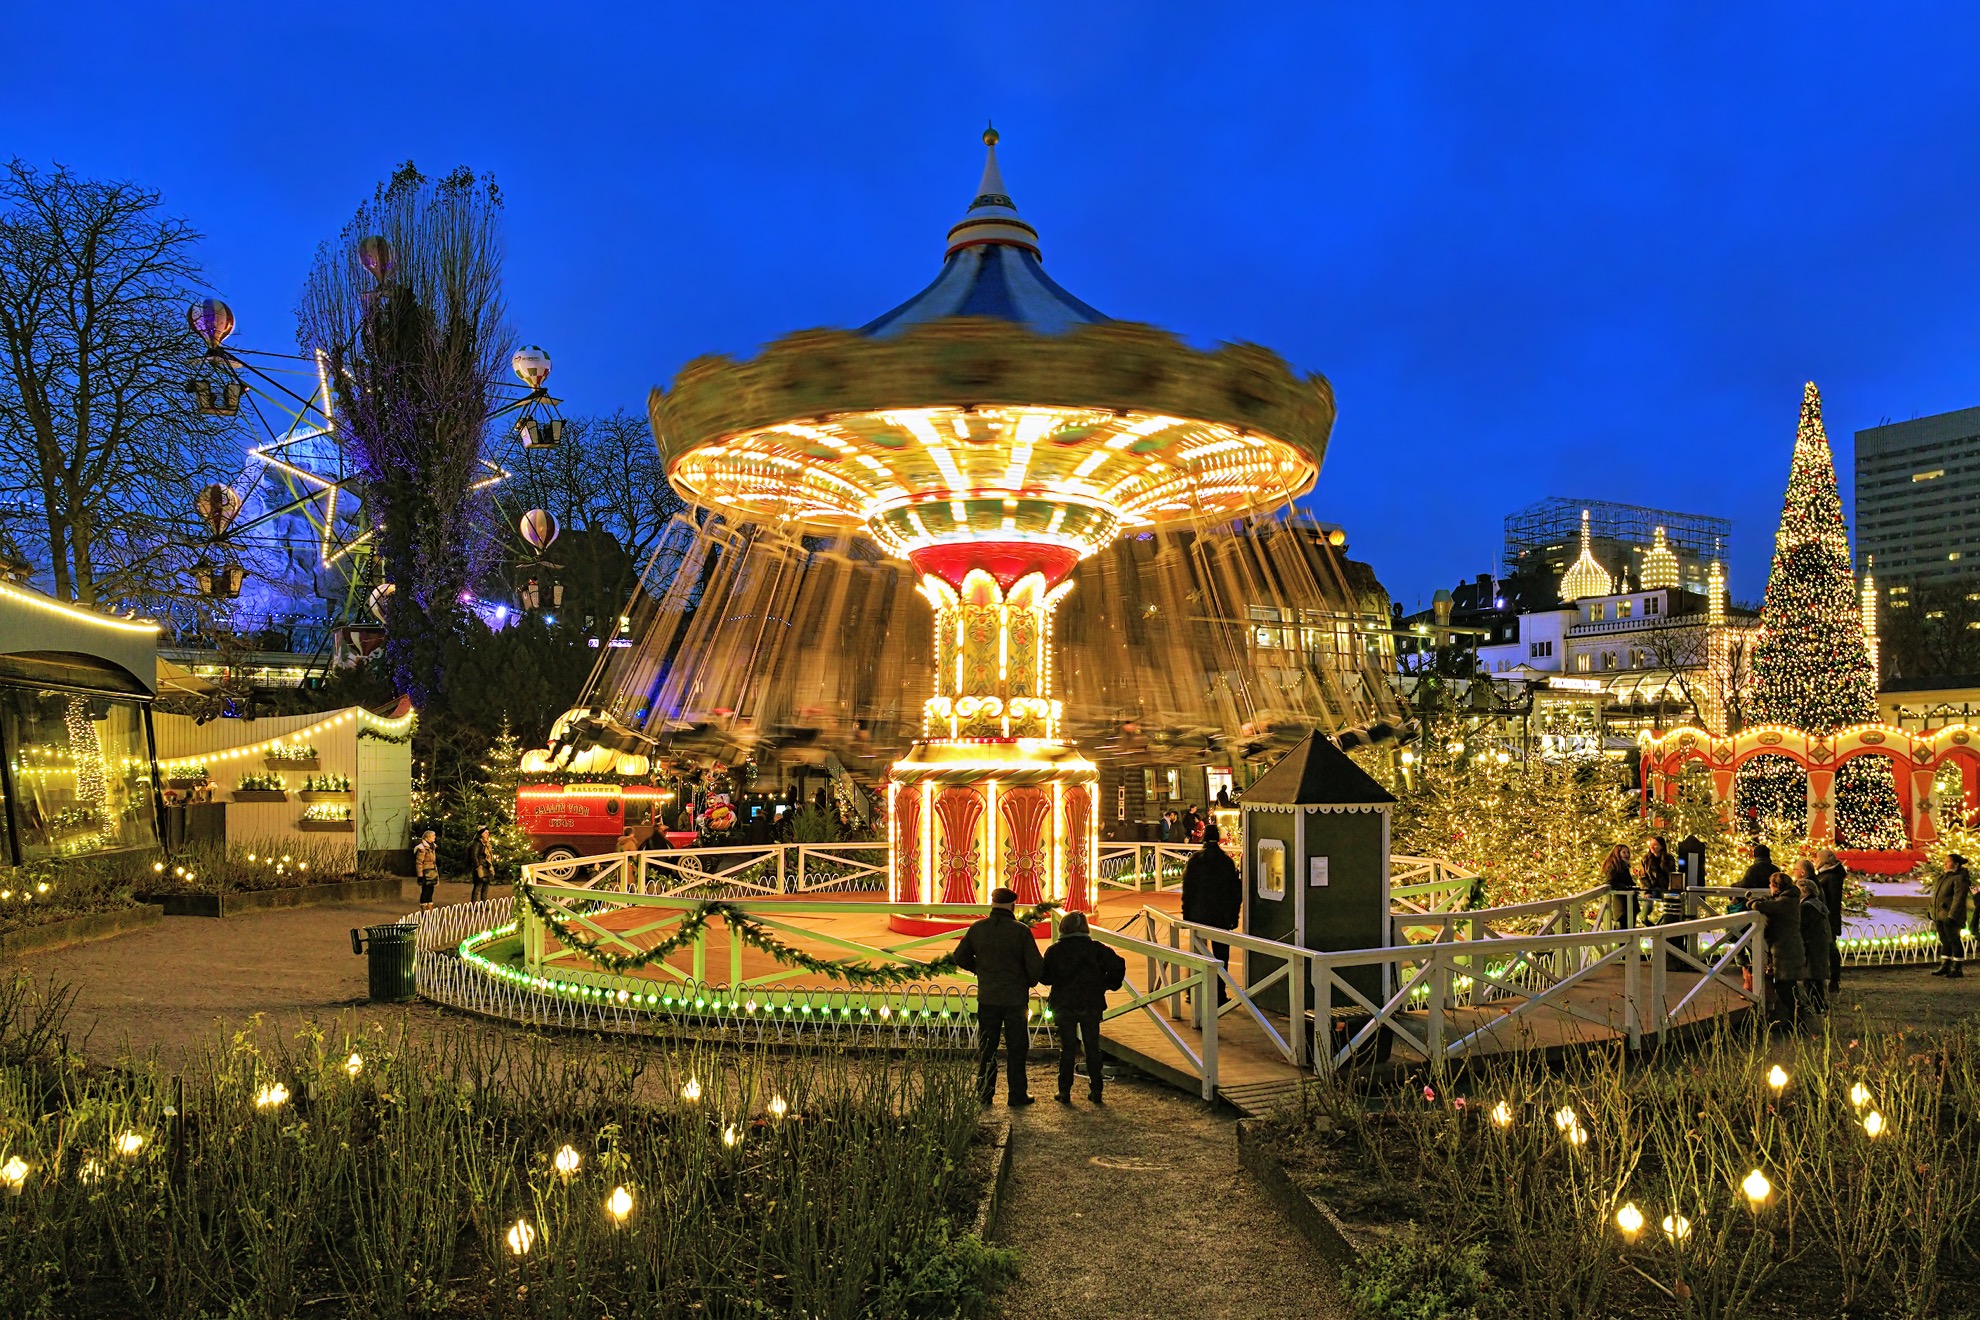 Por qué Tivoli Gardens es una visita obligada alrededor de la Navidad - 17